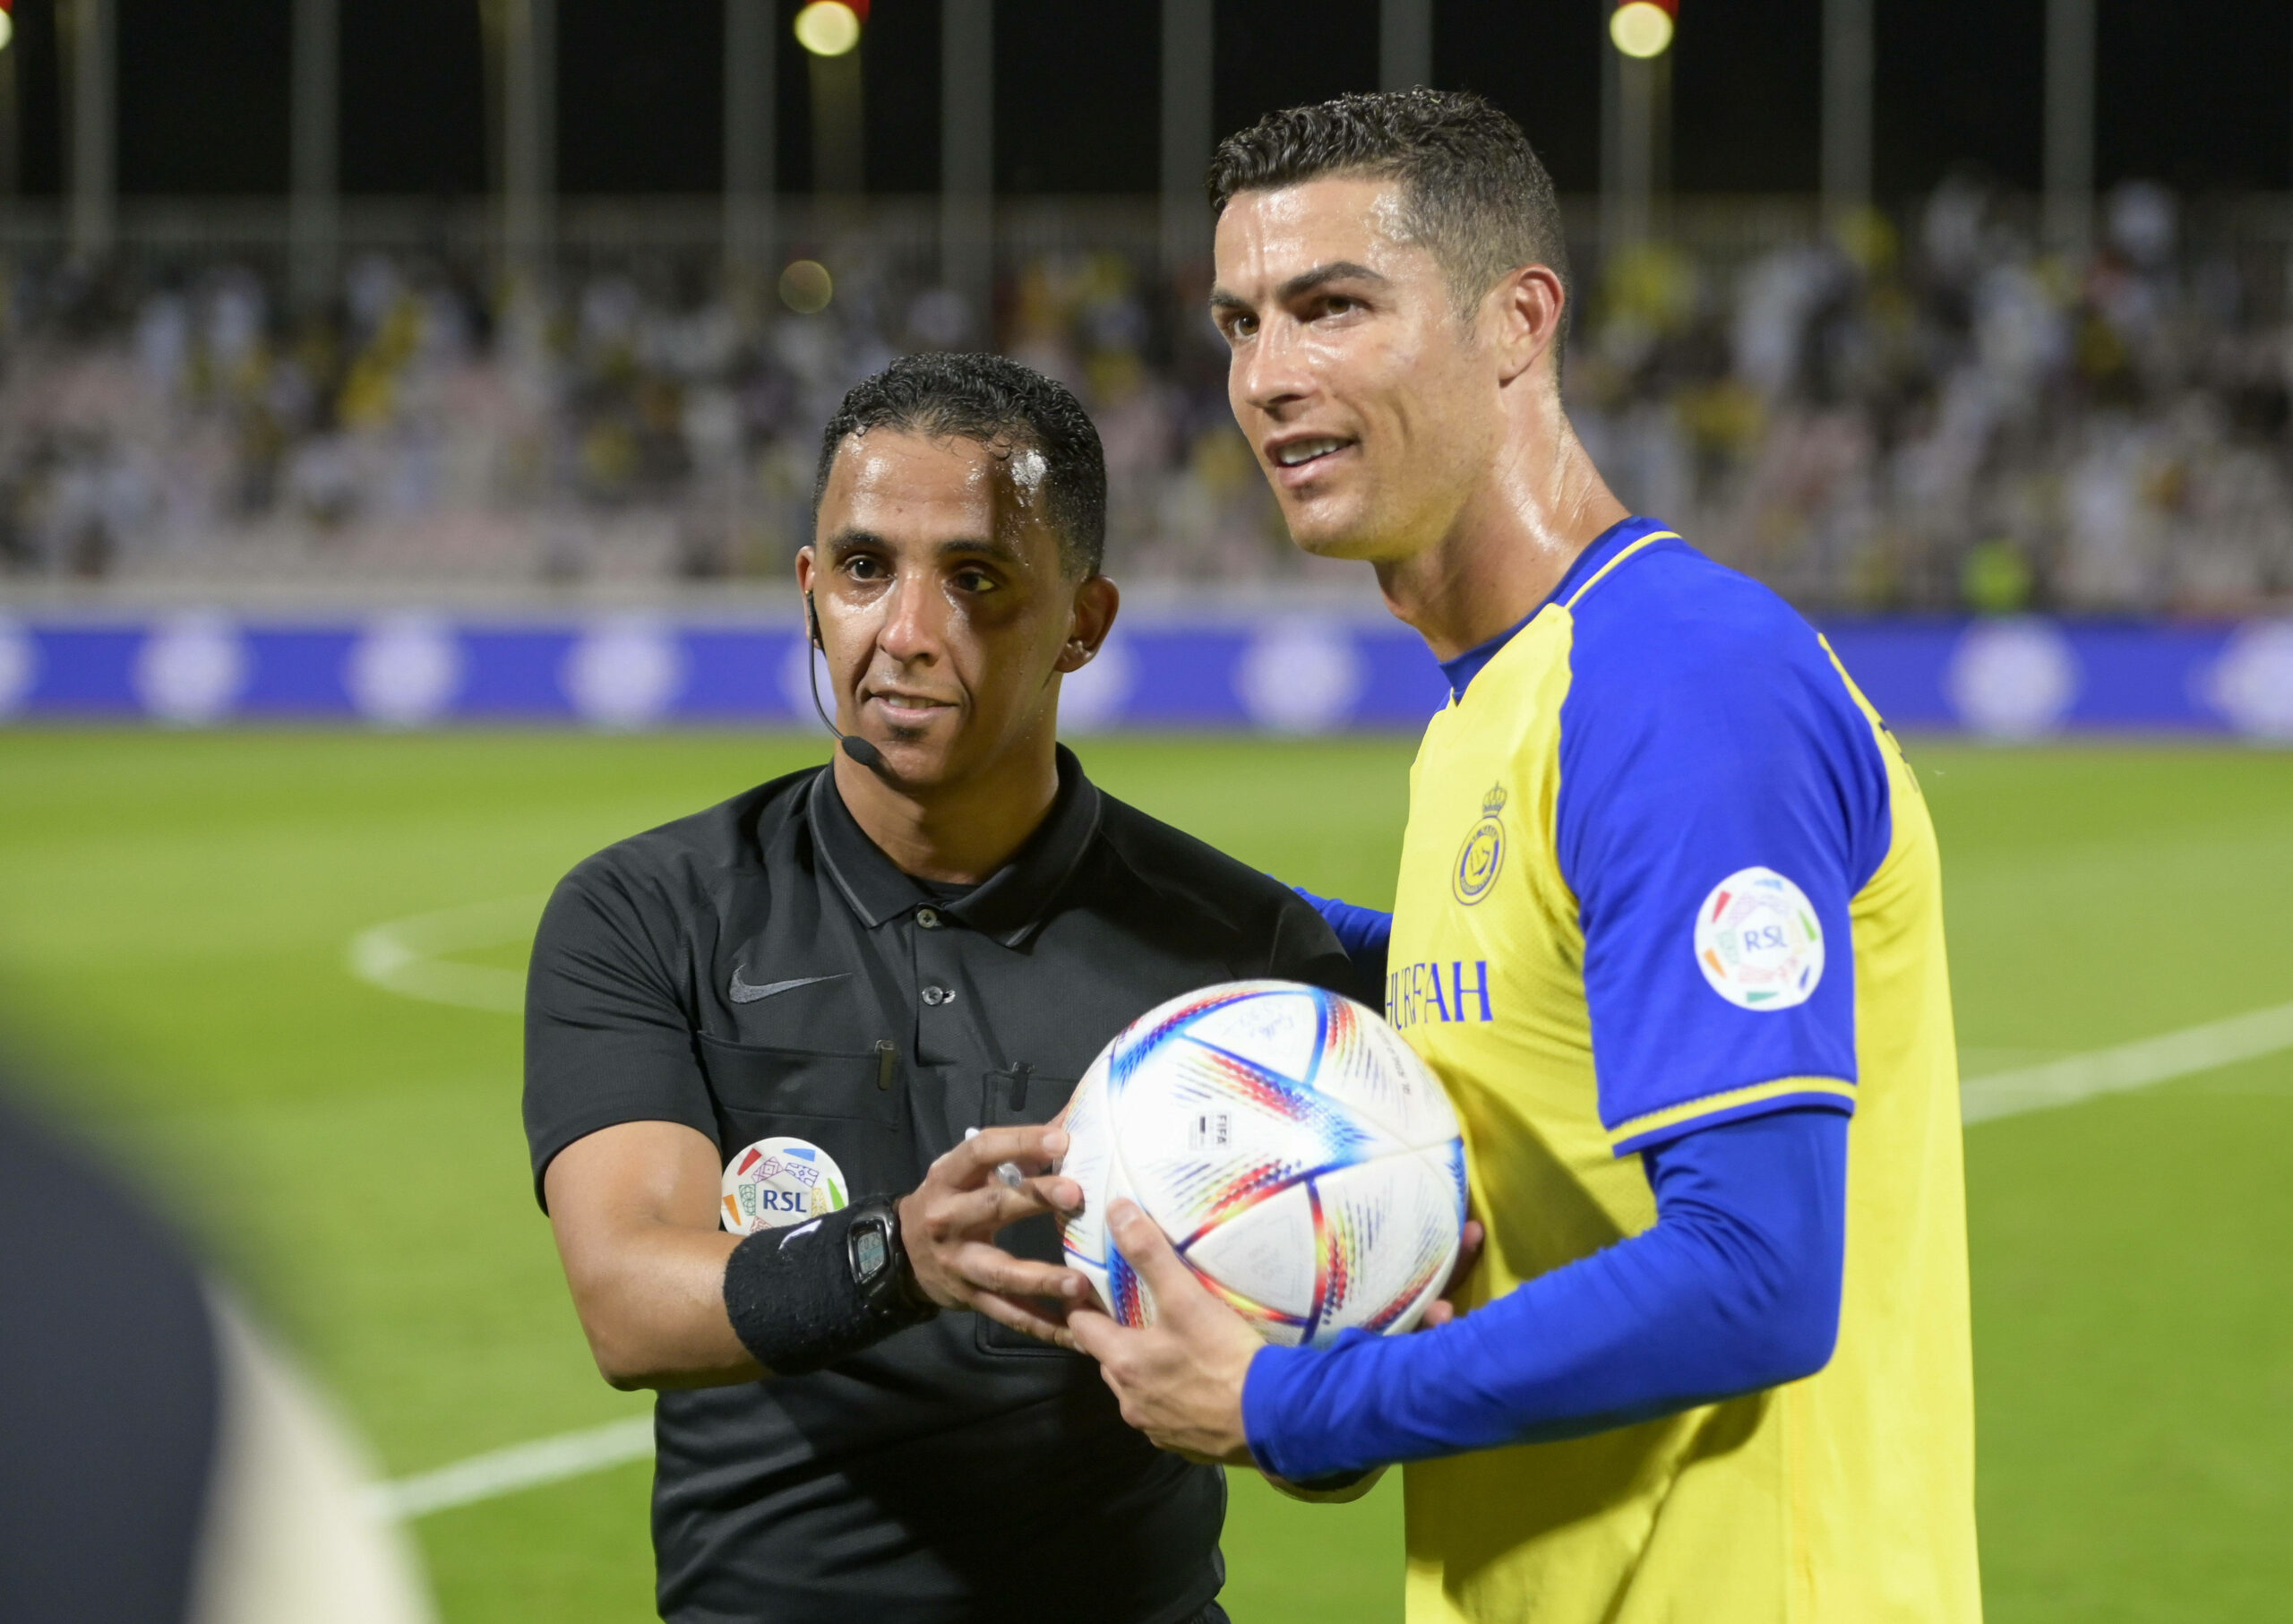 Cristiano Ronaldo sicherte sich nach dem Spiel noch den Ball vom Schiedsrichter.